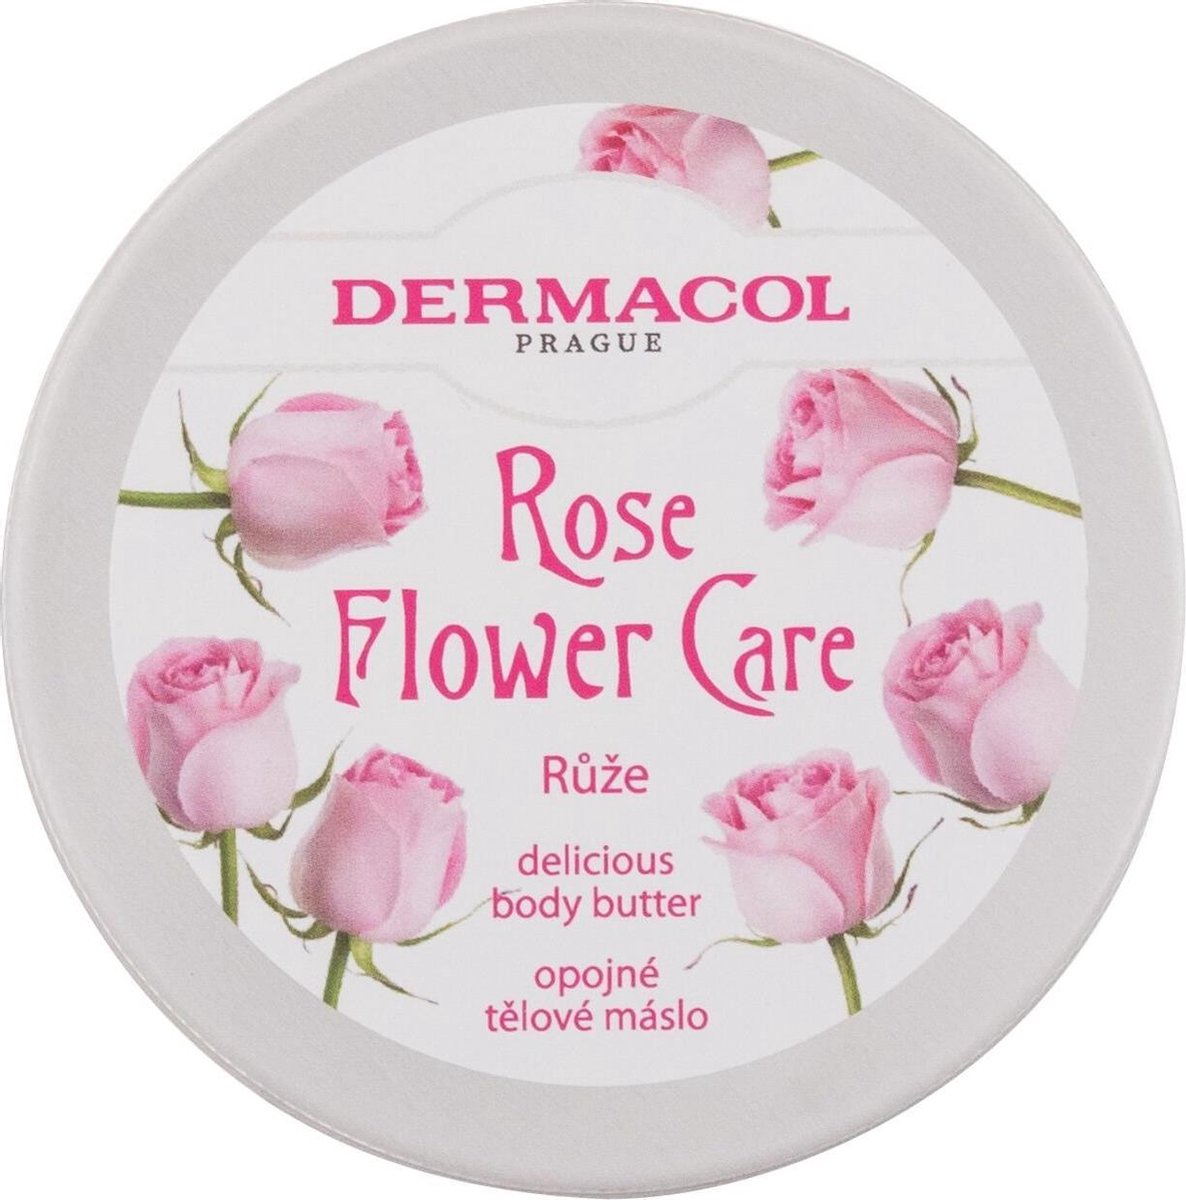 Rose Flower Care Body Butter 75ml